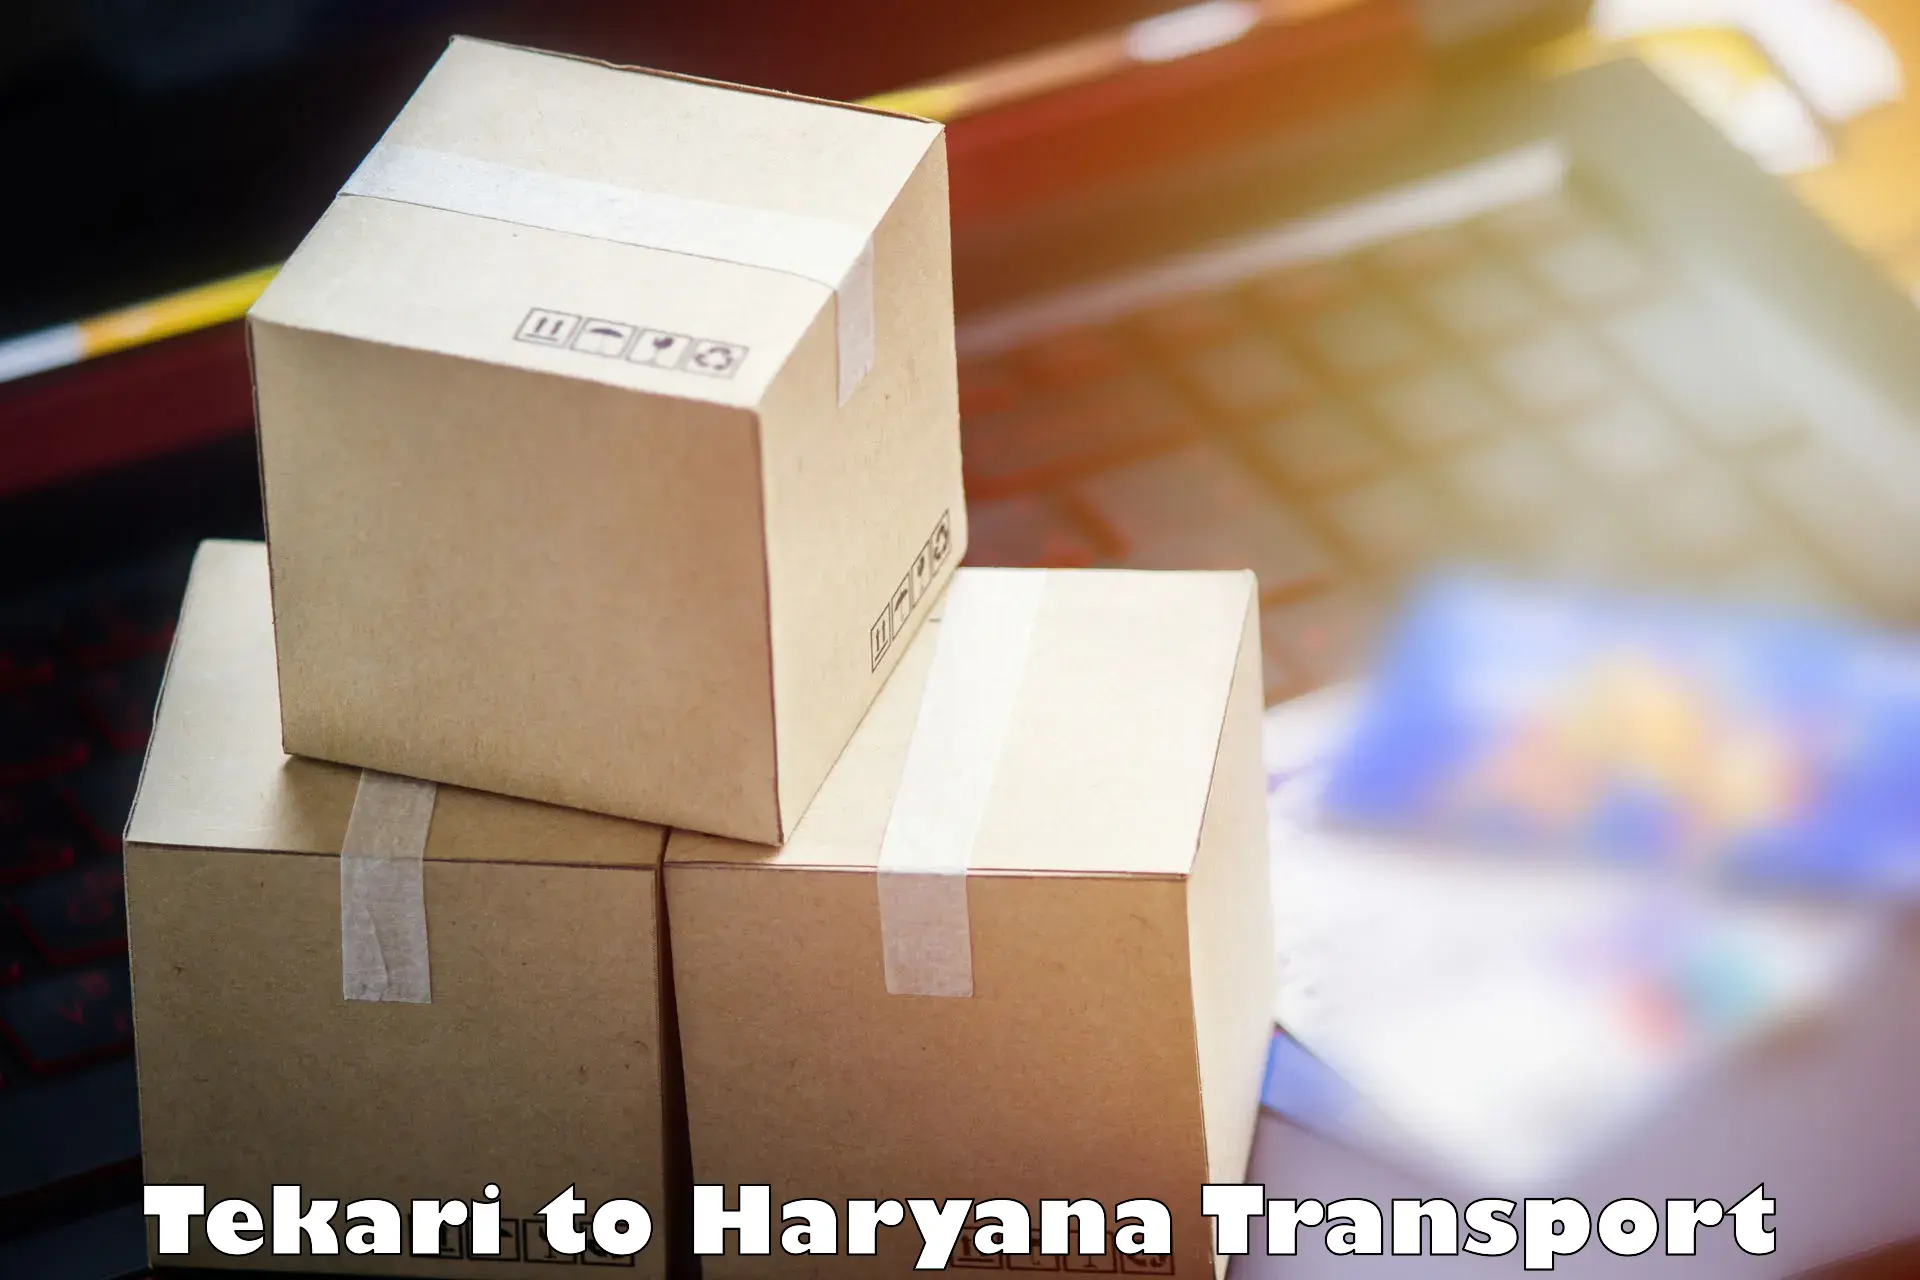 Furniture transport service Tekari to Hansi